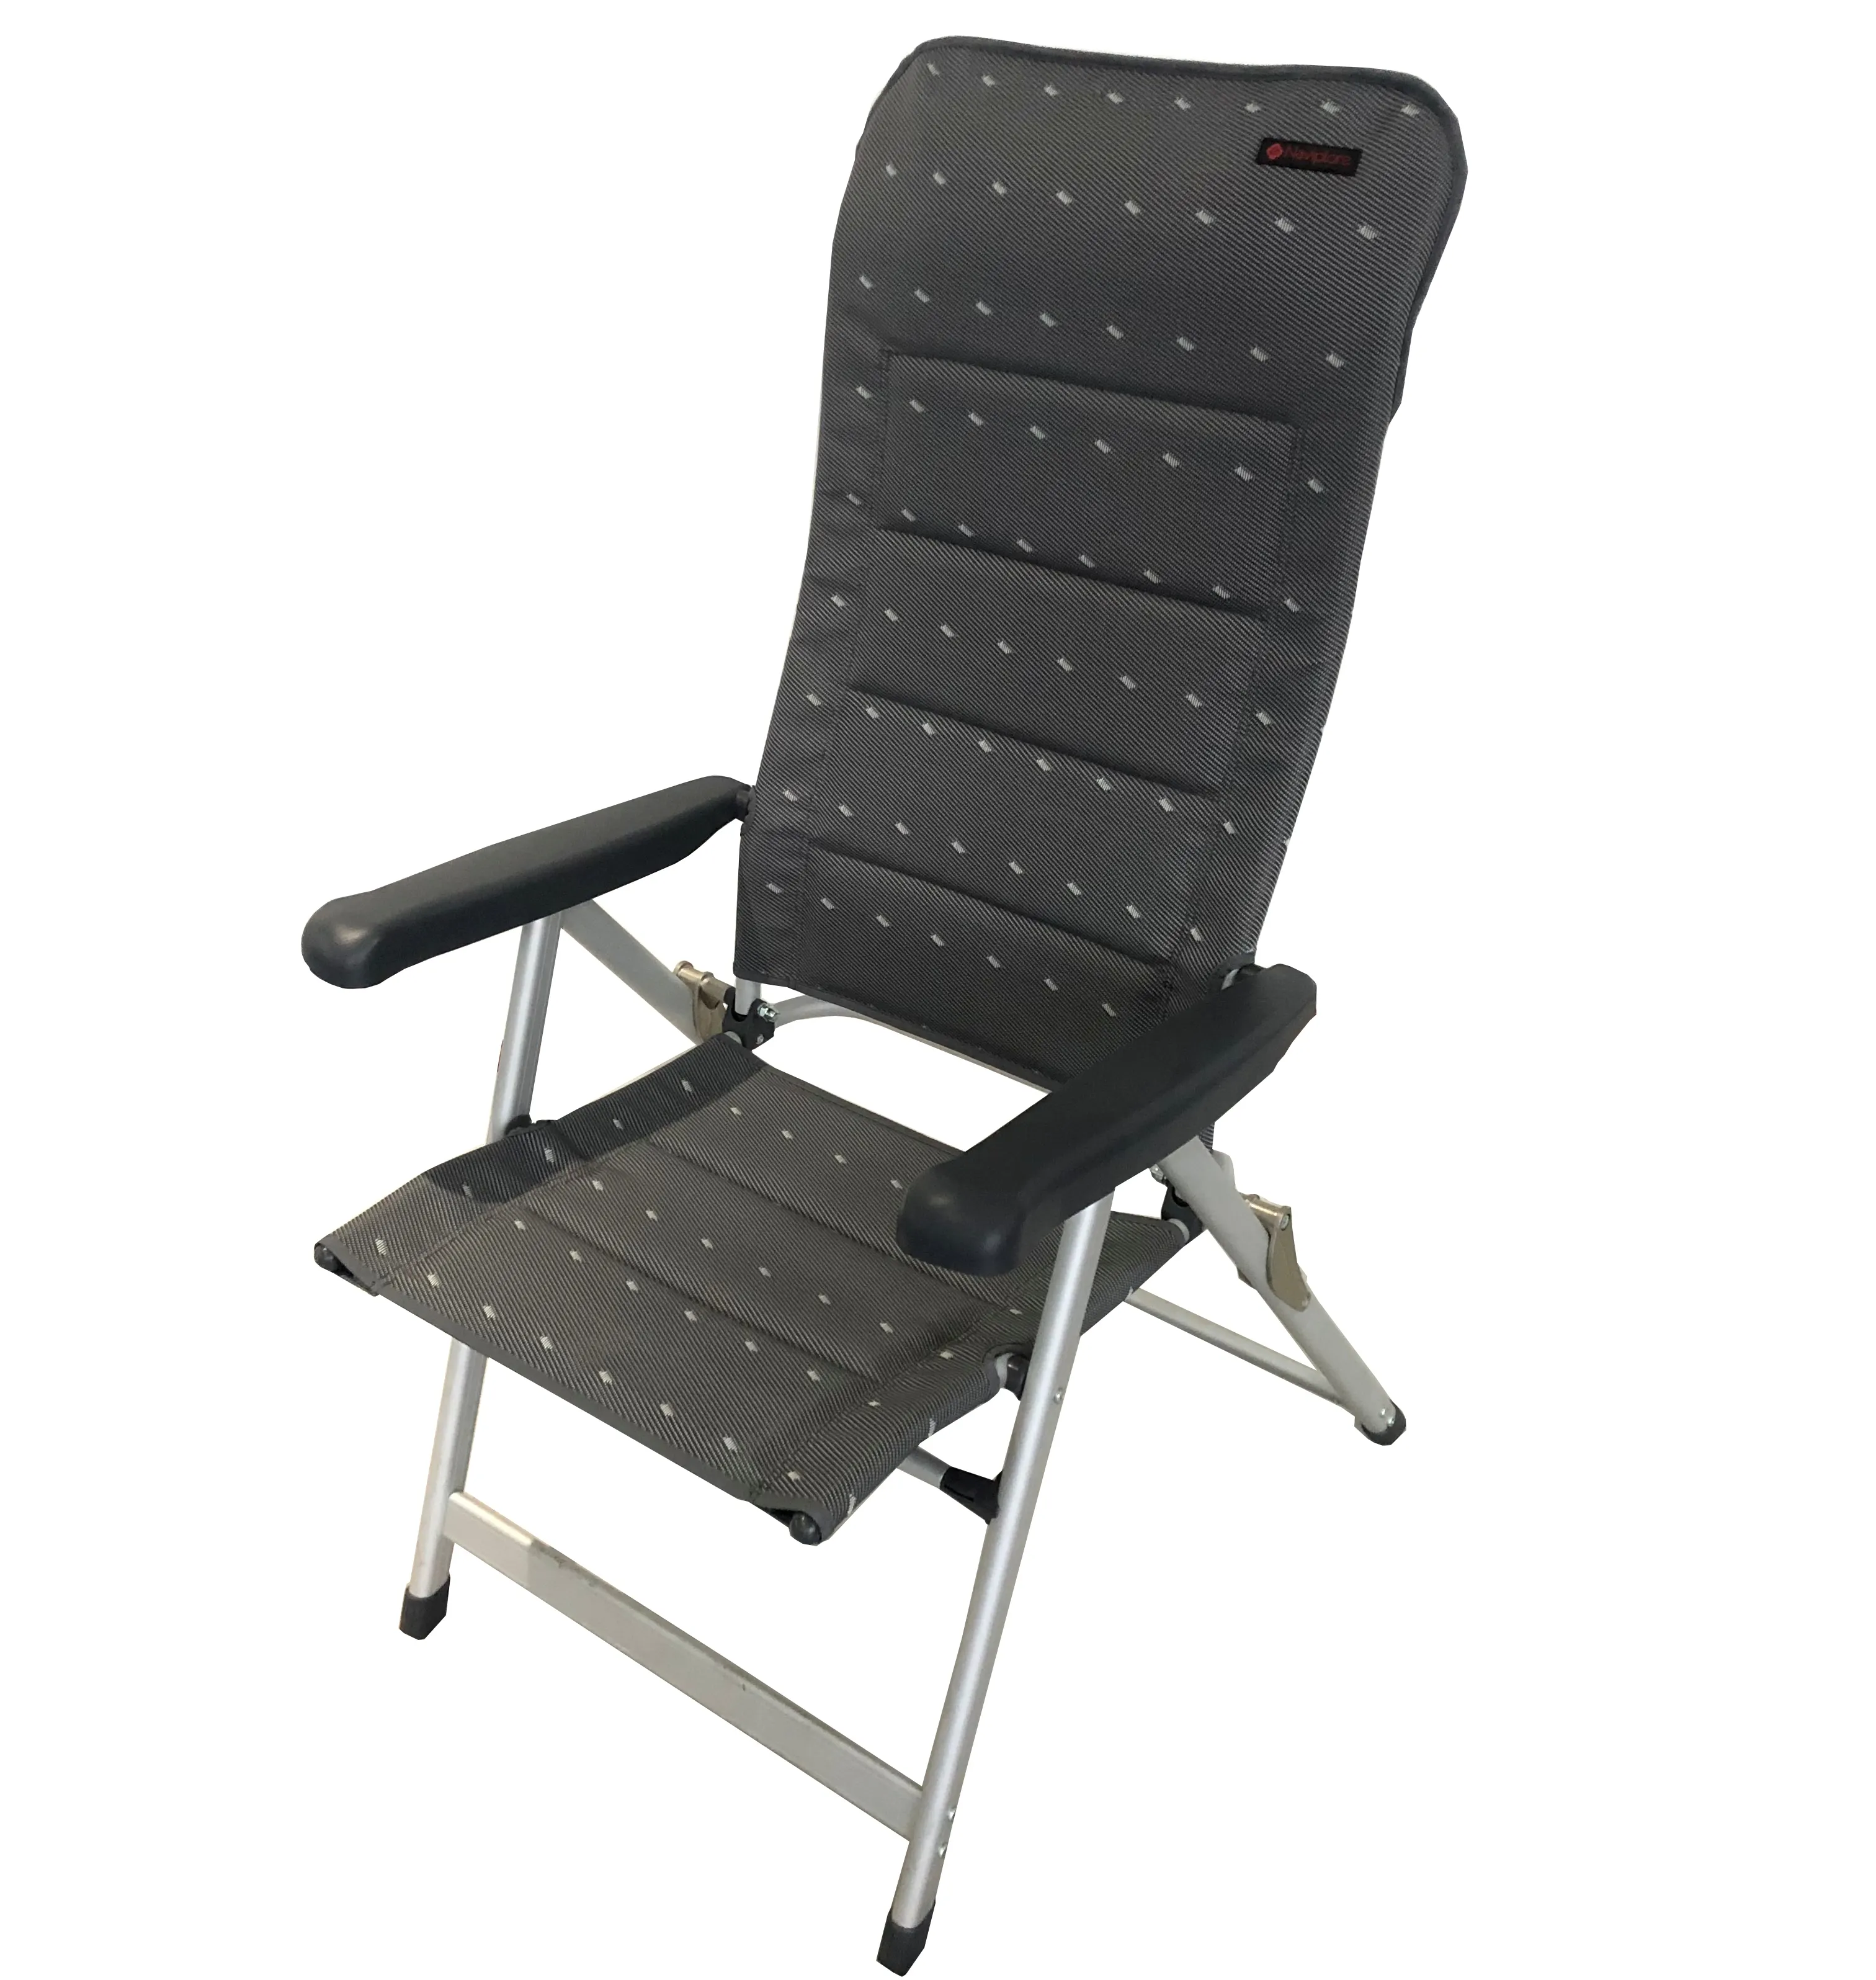 Cadeira dobrável de alumínio para acampamento, de boa qualidade, 2x1 dura-malha, base de caravana, cadeira acolchoada e com apoio para braço ajustável